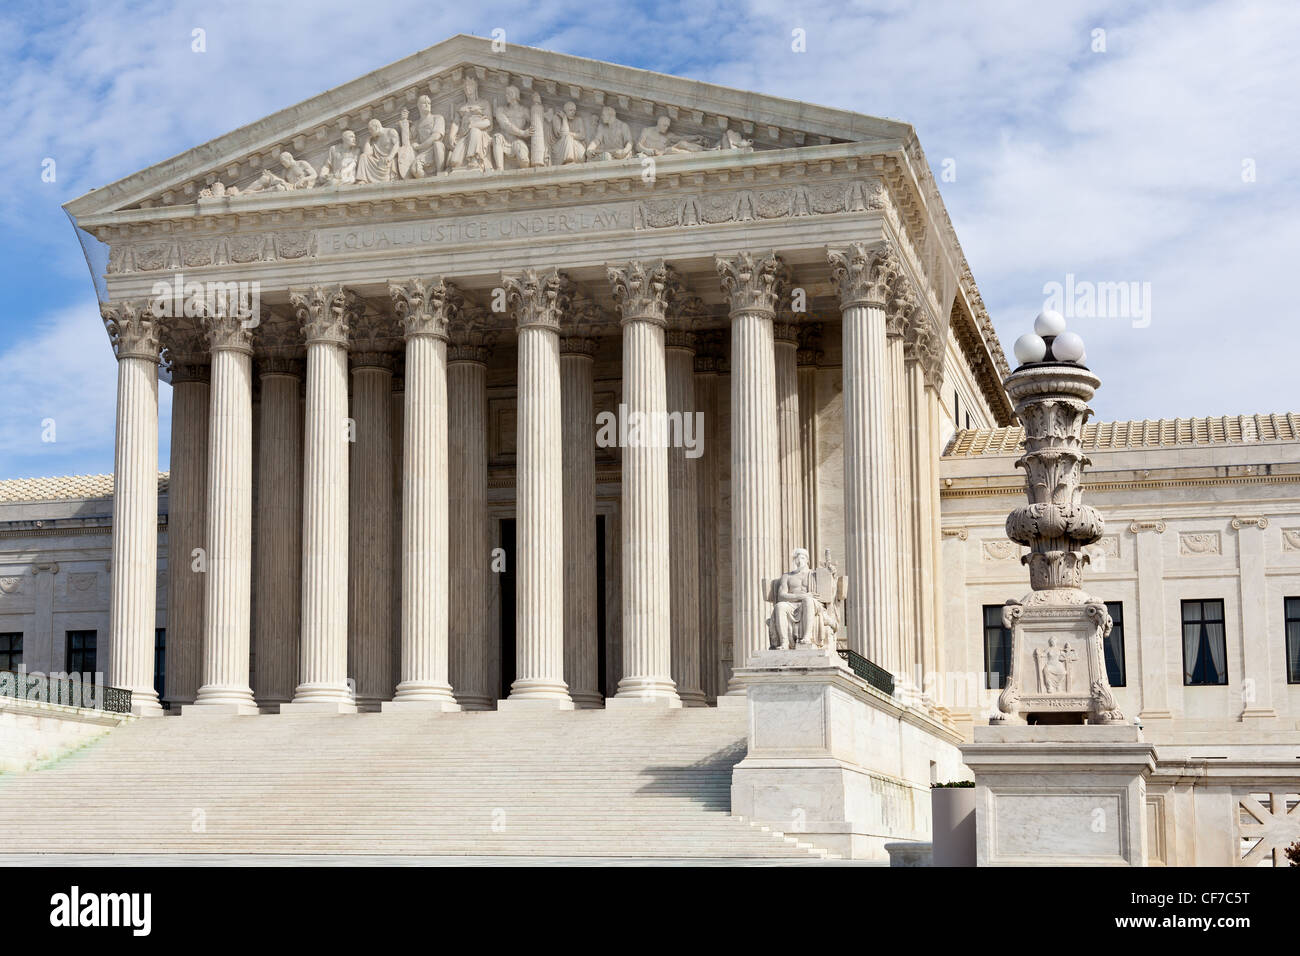 La facciata della Corte suprema degli Stati Uniti a Washington DC il giorno di sole Foto Stock